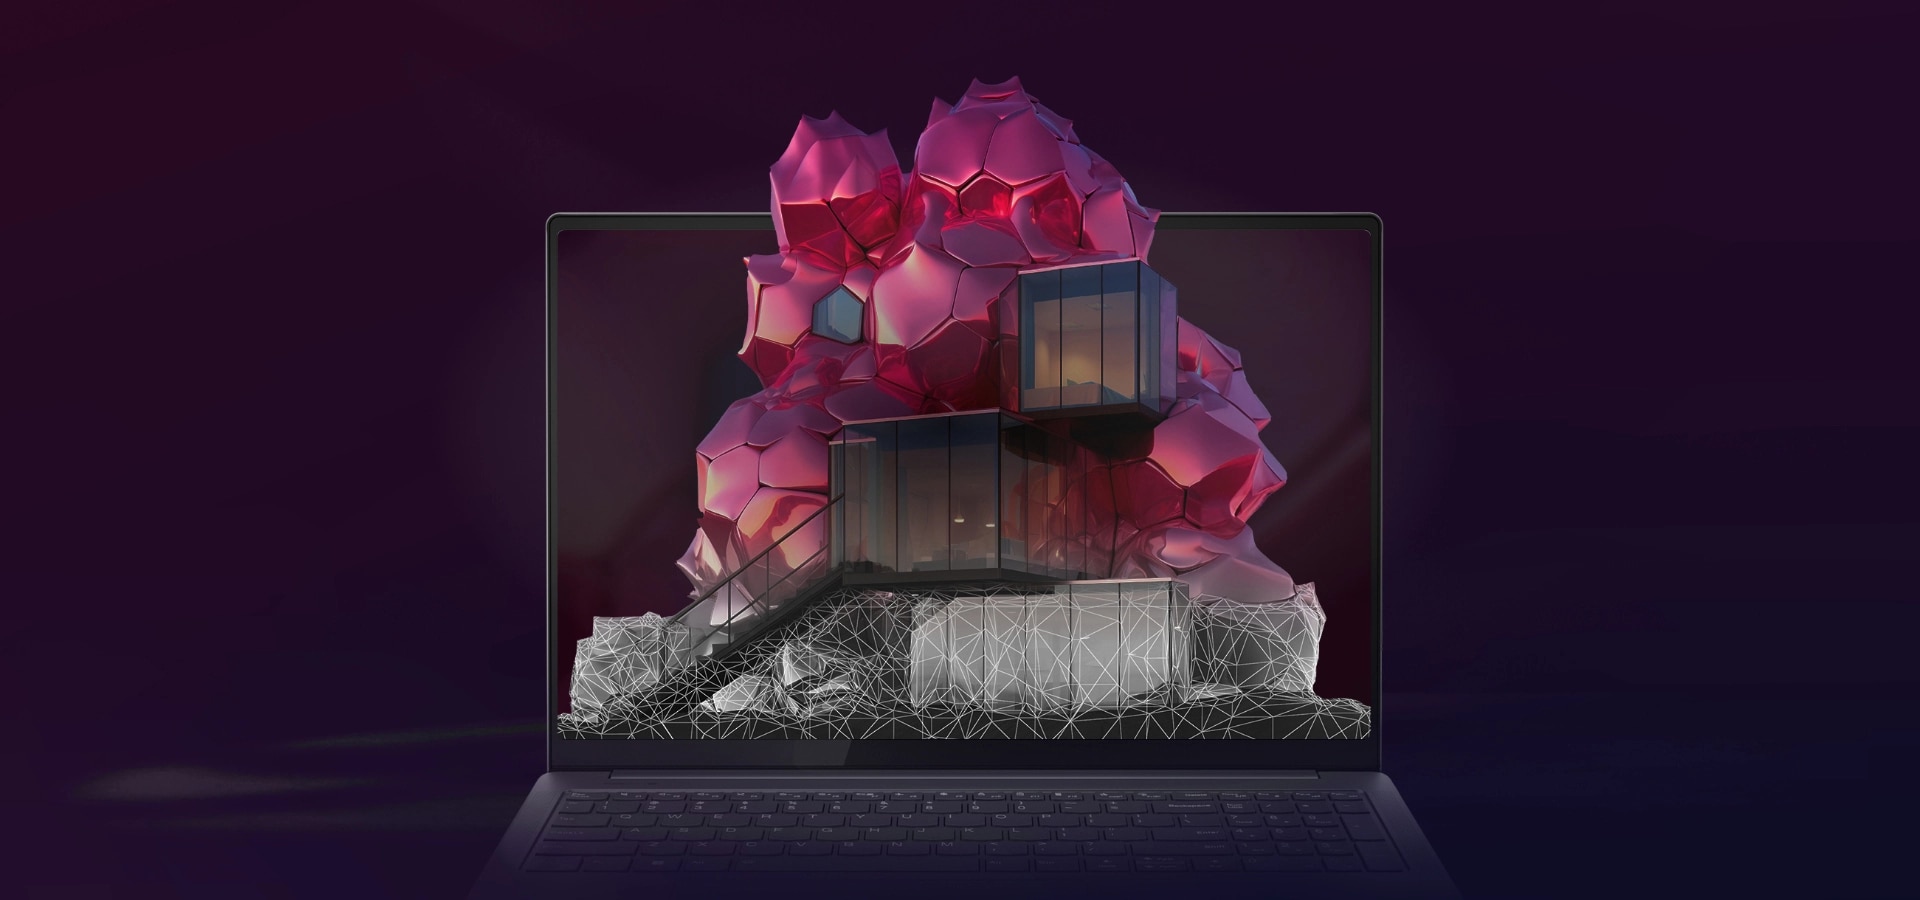 열린 레노버 Yoga 노트북의 디스플레이에 회색과 빨간색 다면체 디자인이 나타나는 모습